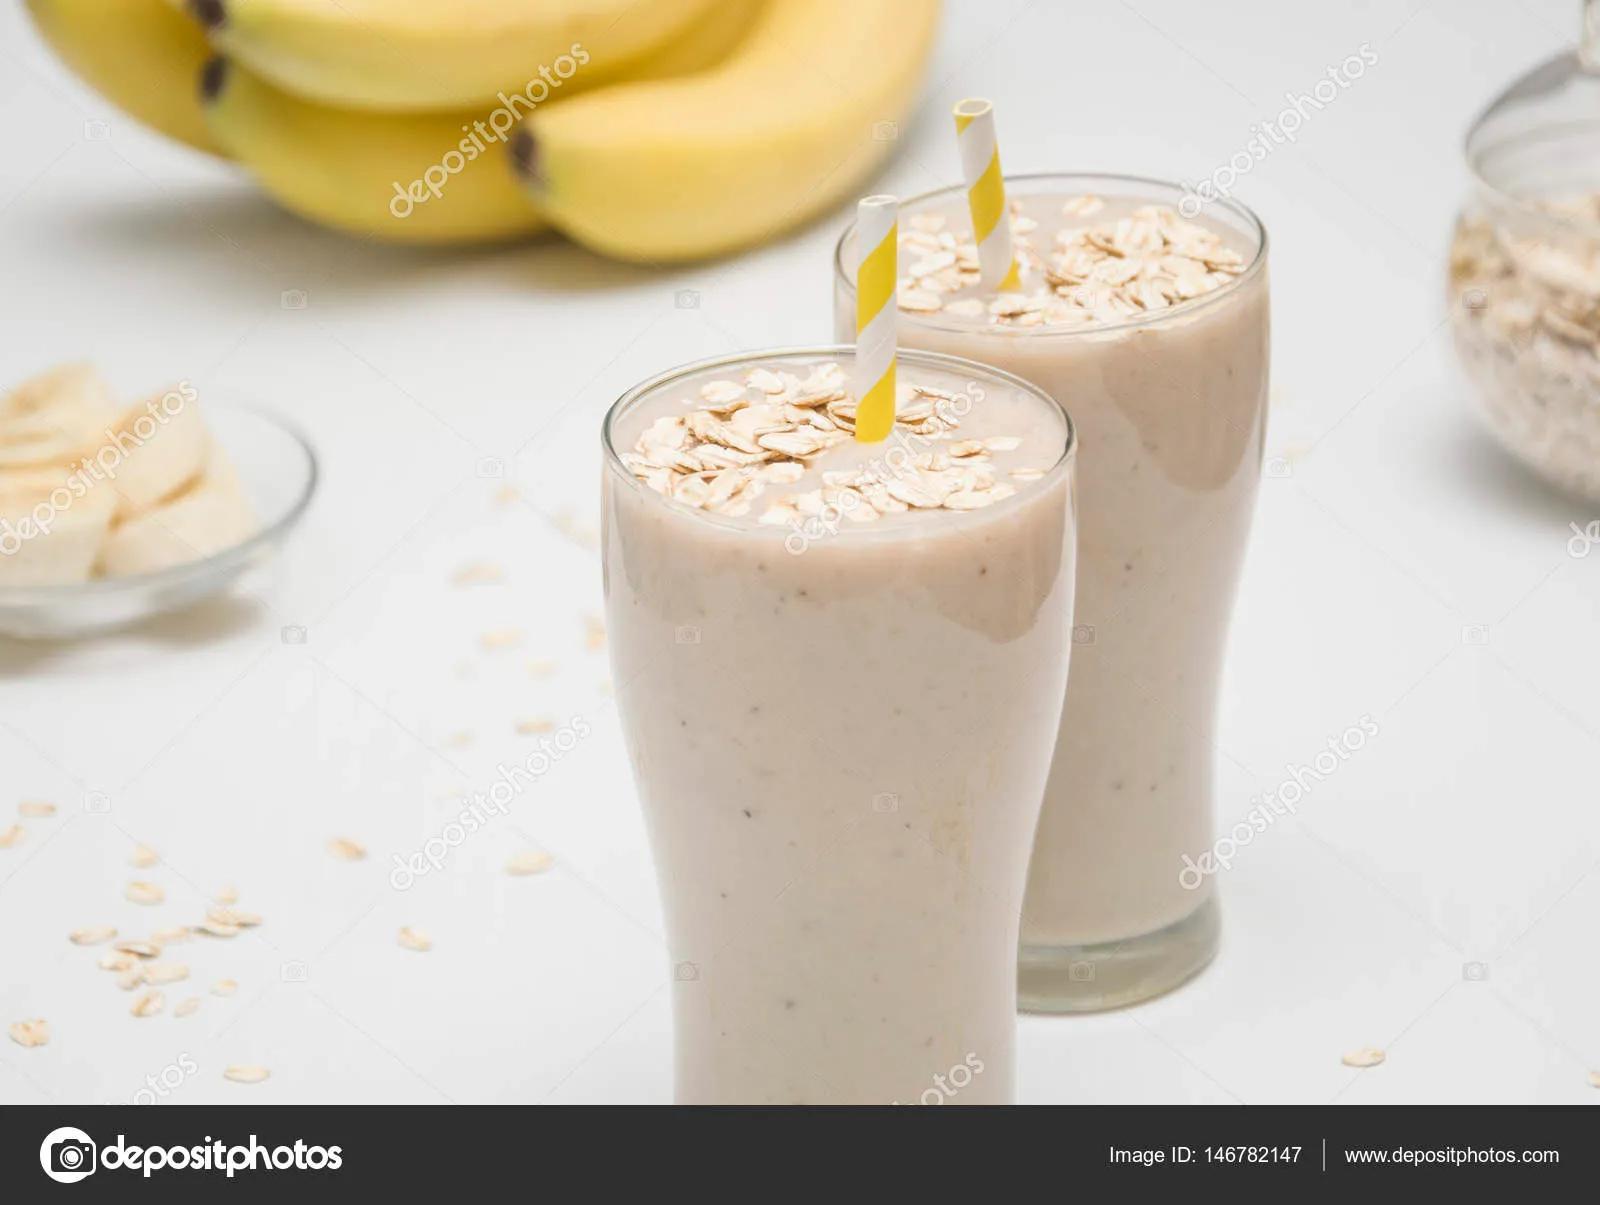 Milchshake mit Banane und Haferflocken - Stockfotografie: lizenzfreie ...